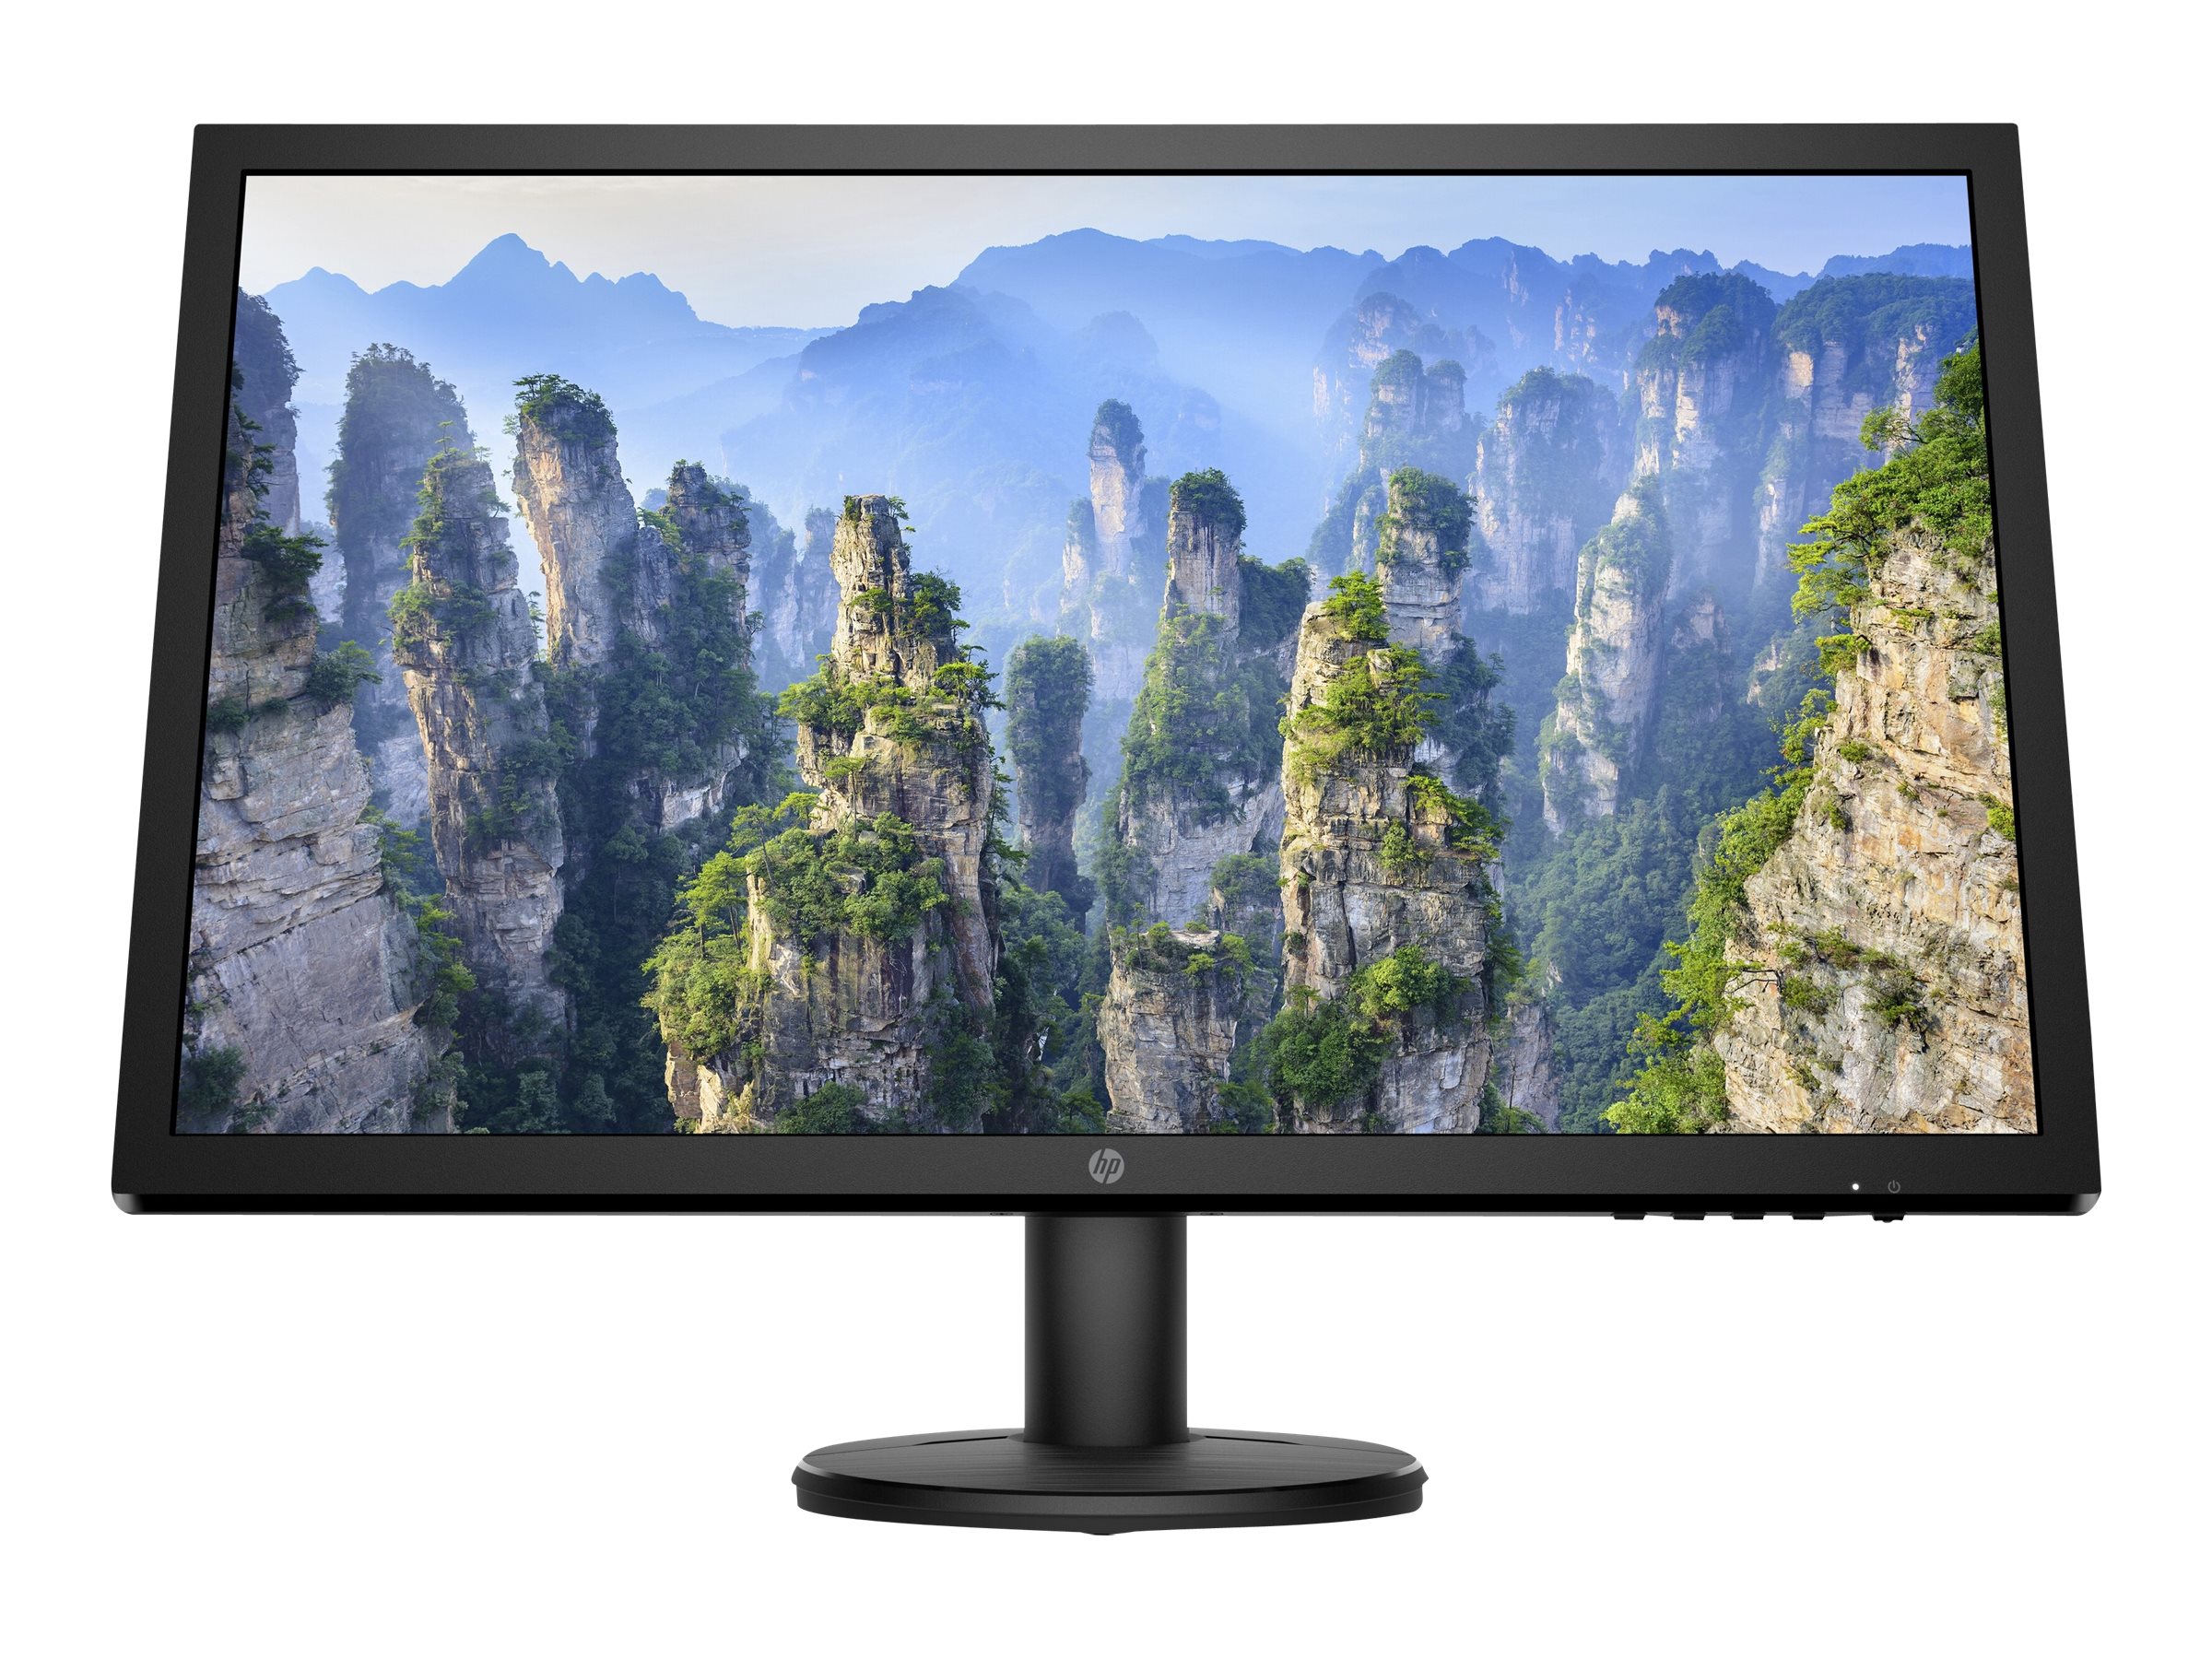 Monitor PC 60,5 cm (23,8) HP V24v G5, 75 Hz, Full HD, AMD FreeSync